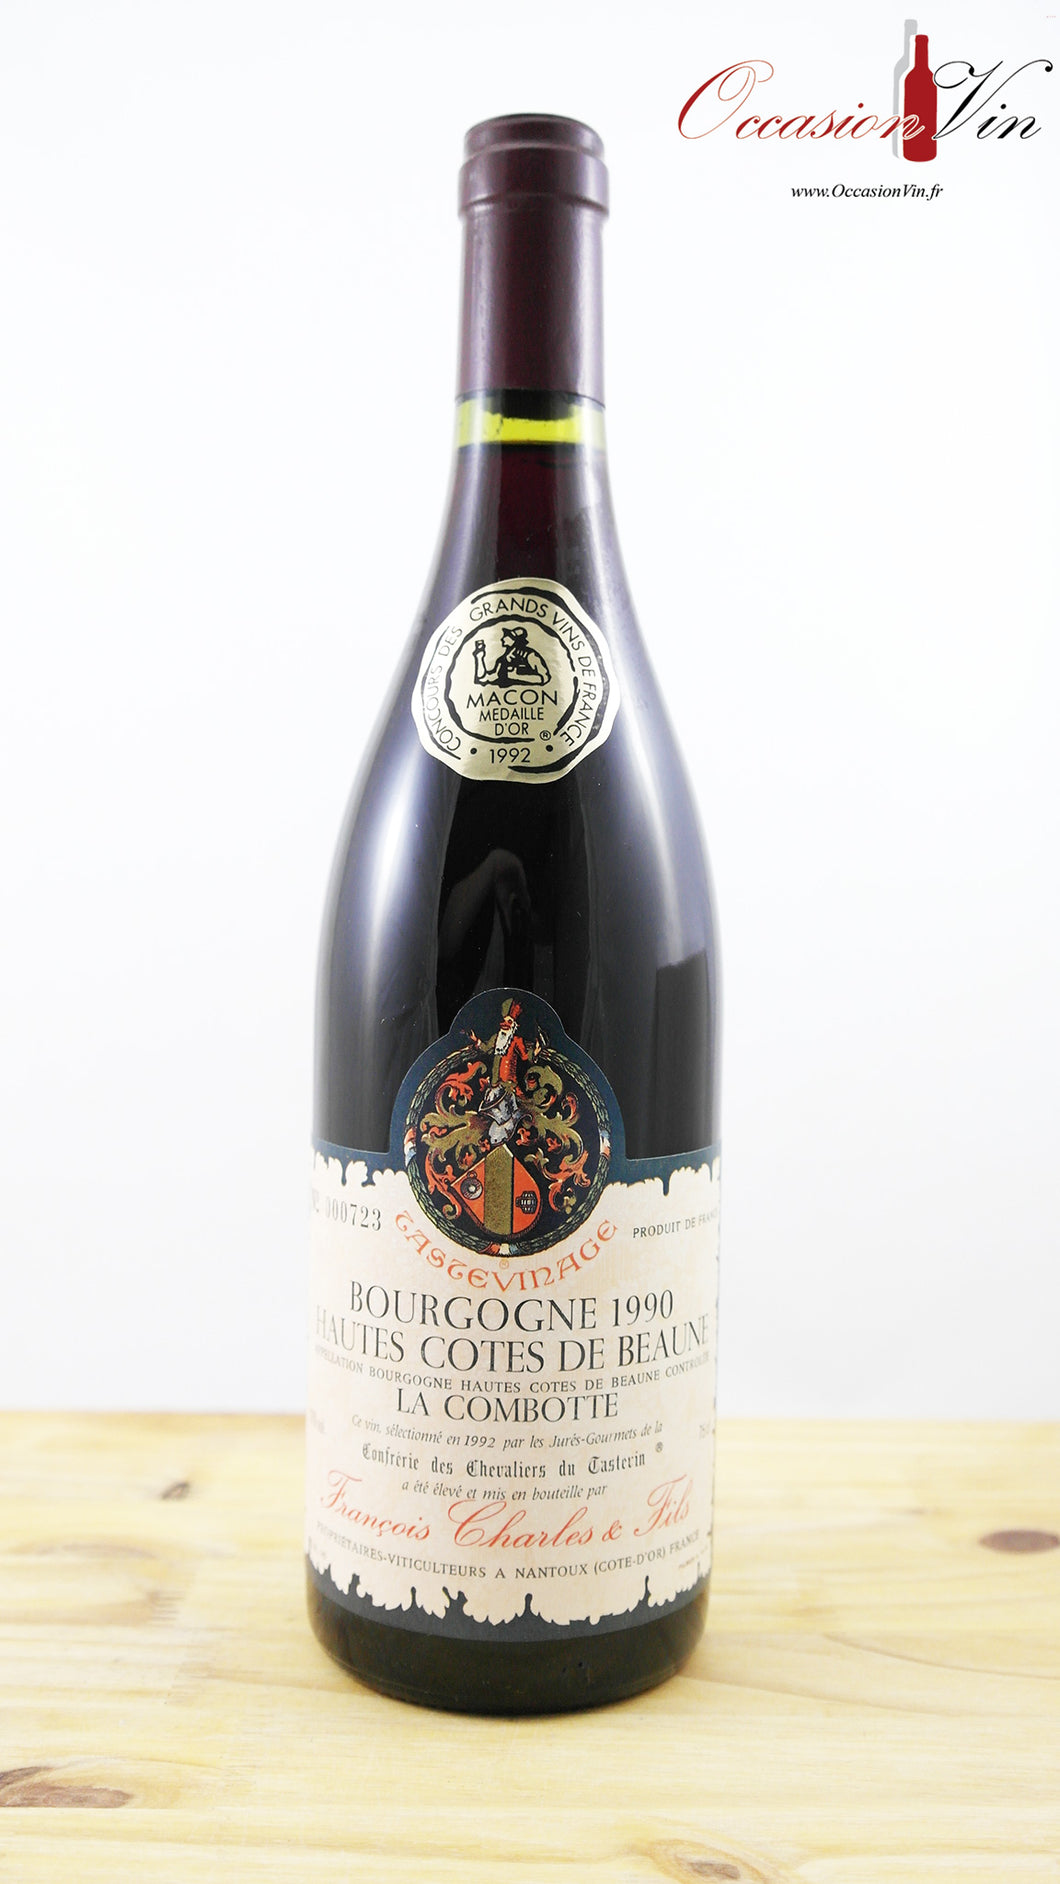 Hautes-Côtes de Beaune La Combotte Vin 1990